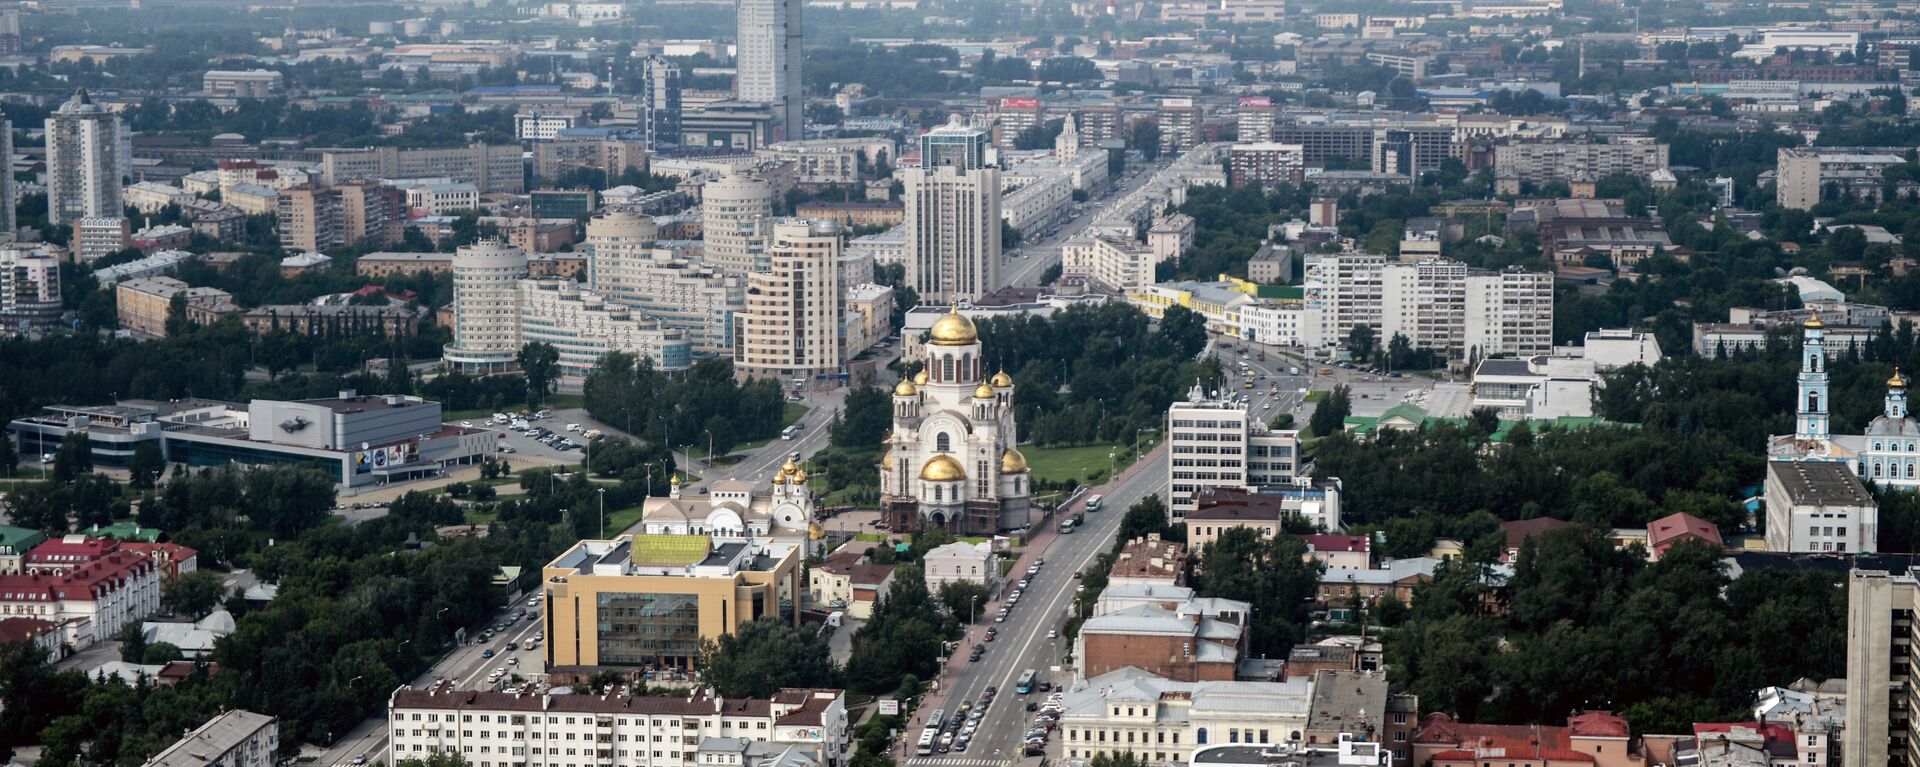 Вид на город со смотровой площадки бизнес-центра Высоцкий - Sputnik Армения, 1920, 14.12.2021